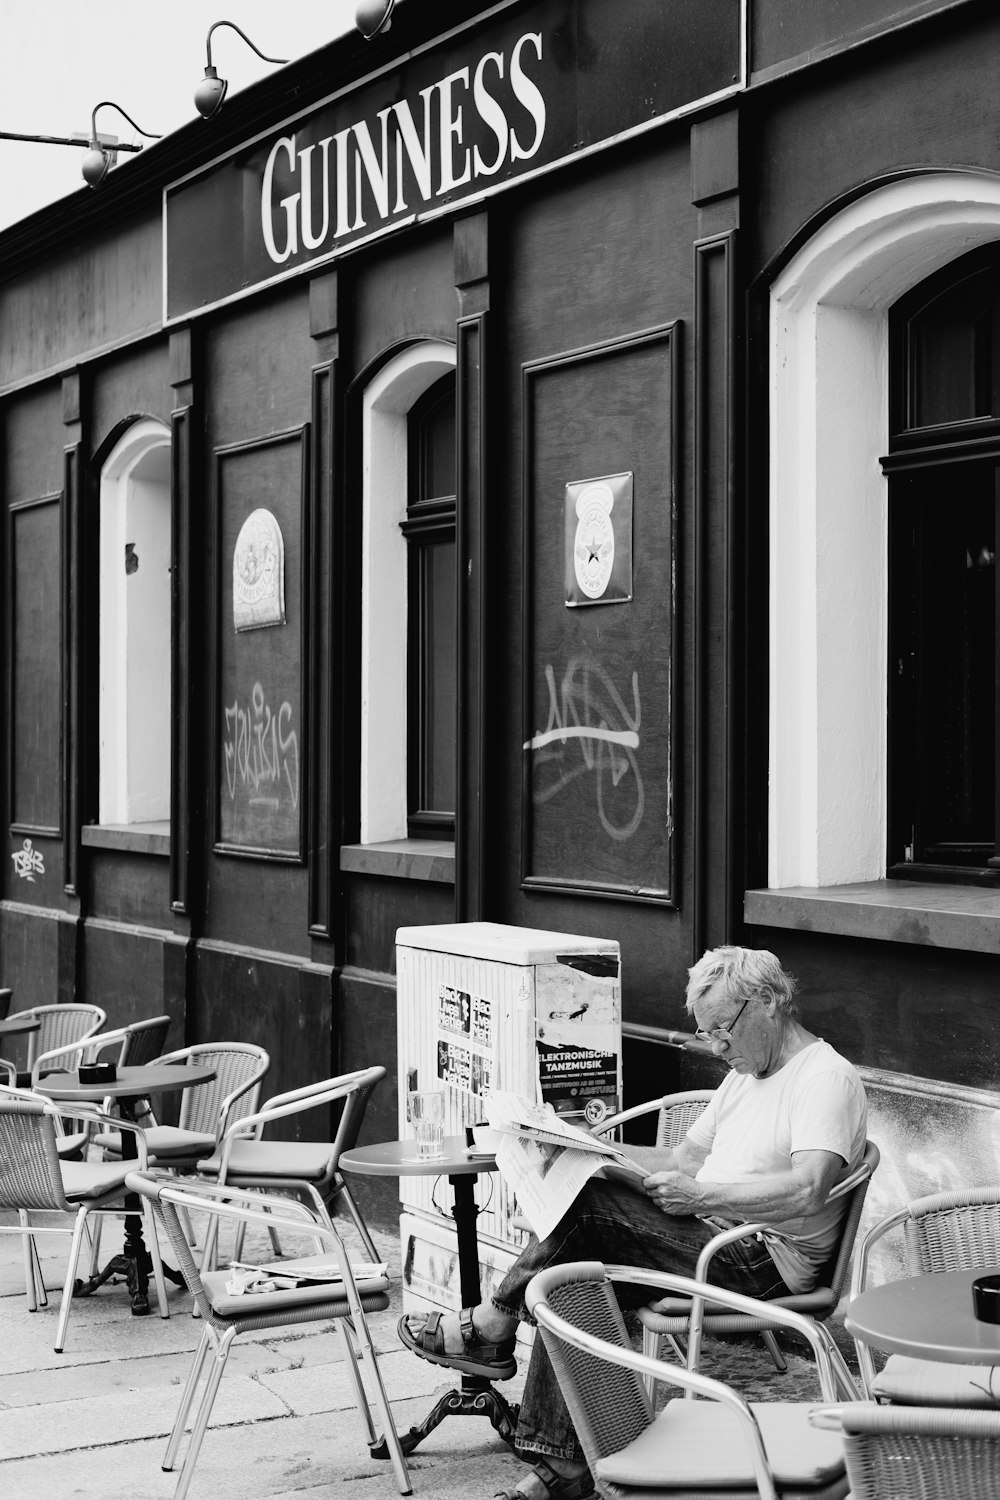 흰 드레스 셔츠를 입은 남자가 의자에 앉아 신문을 읽고 있습니다.